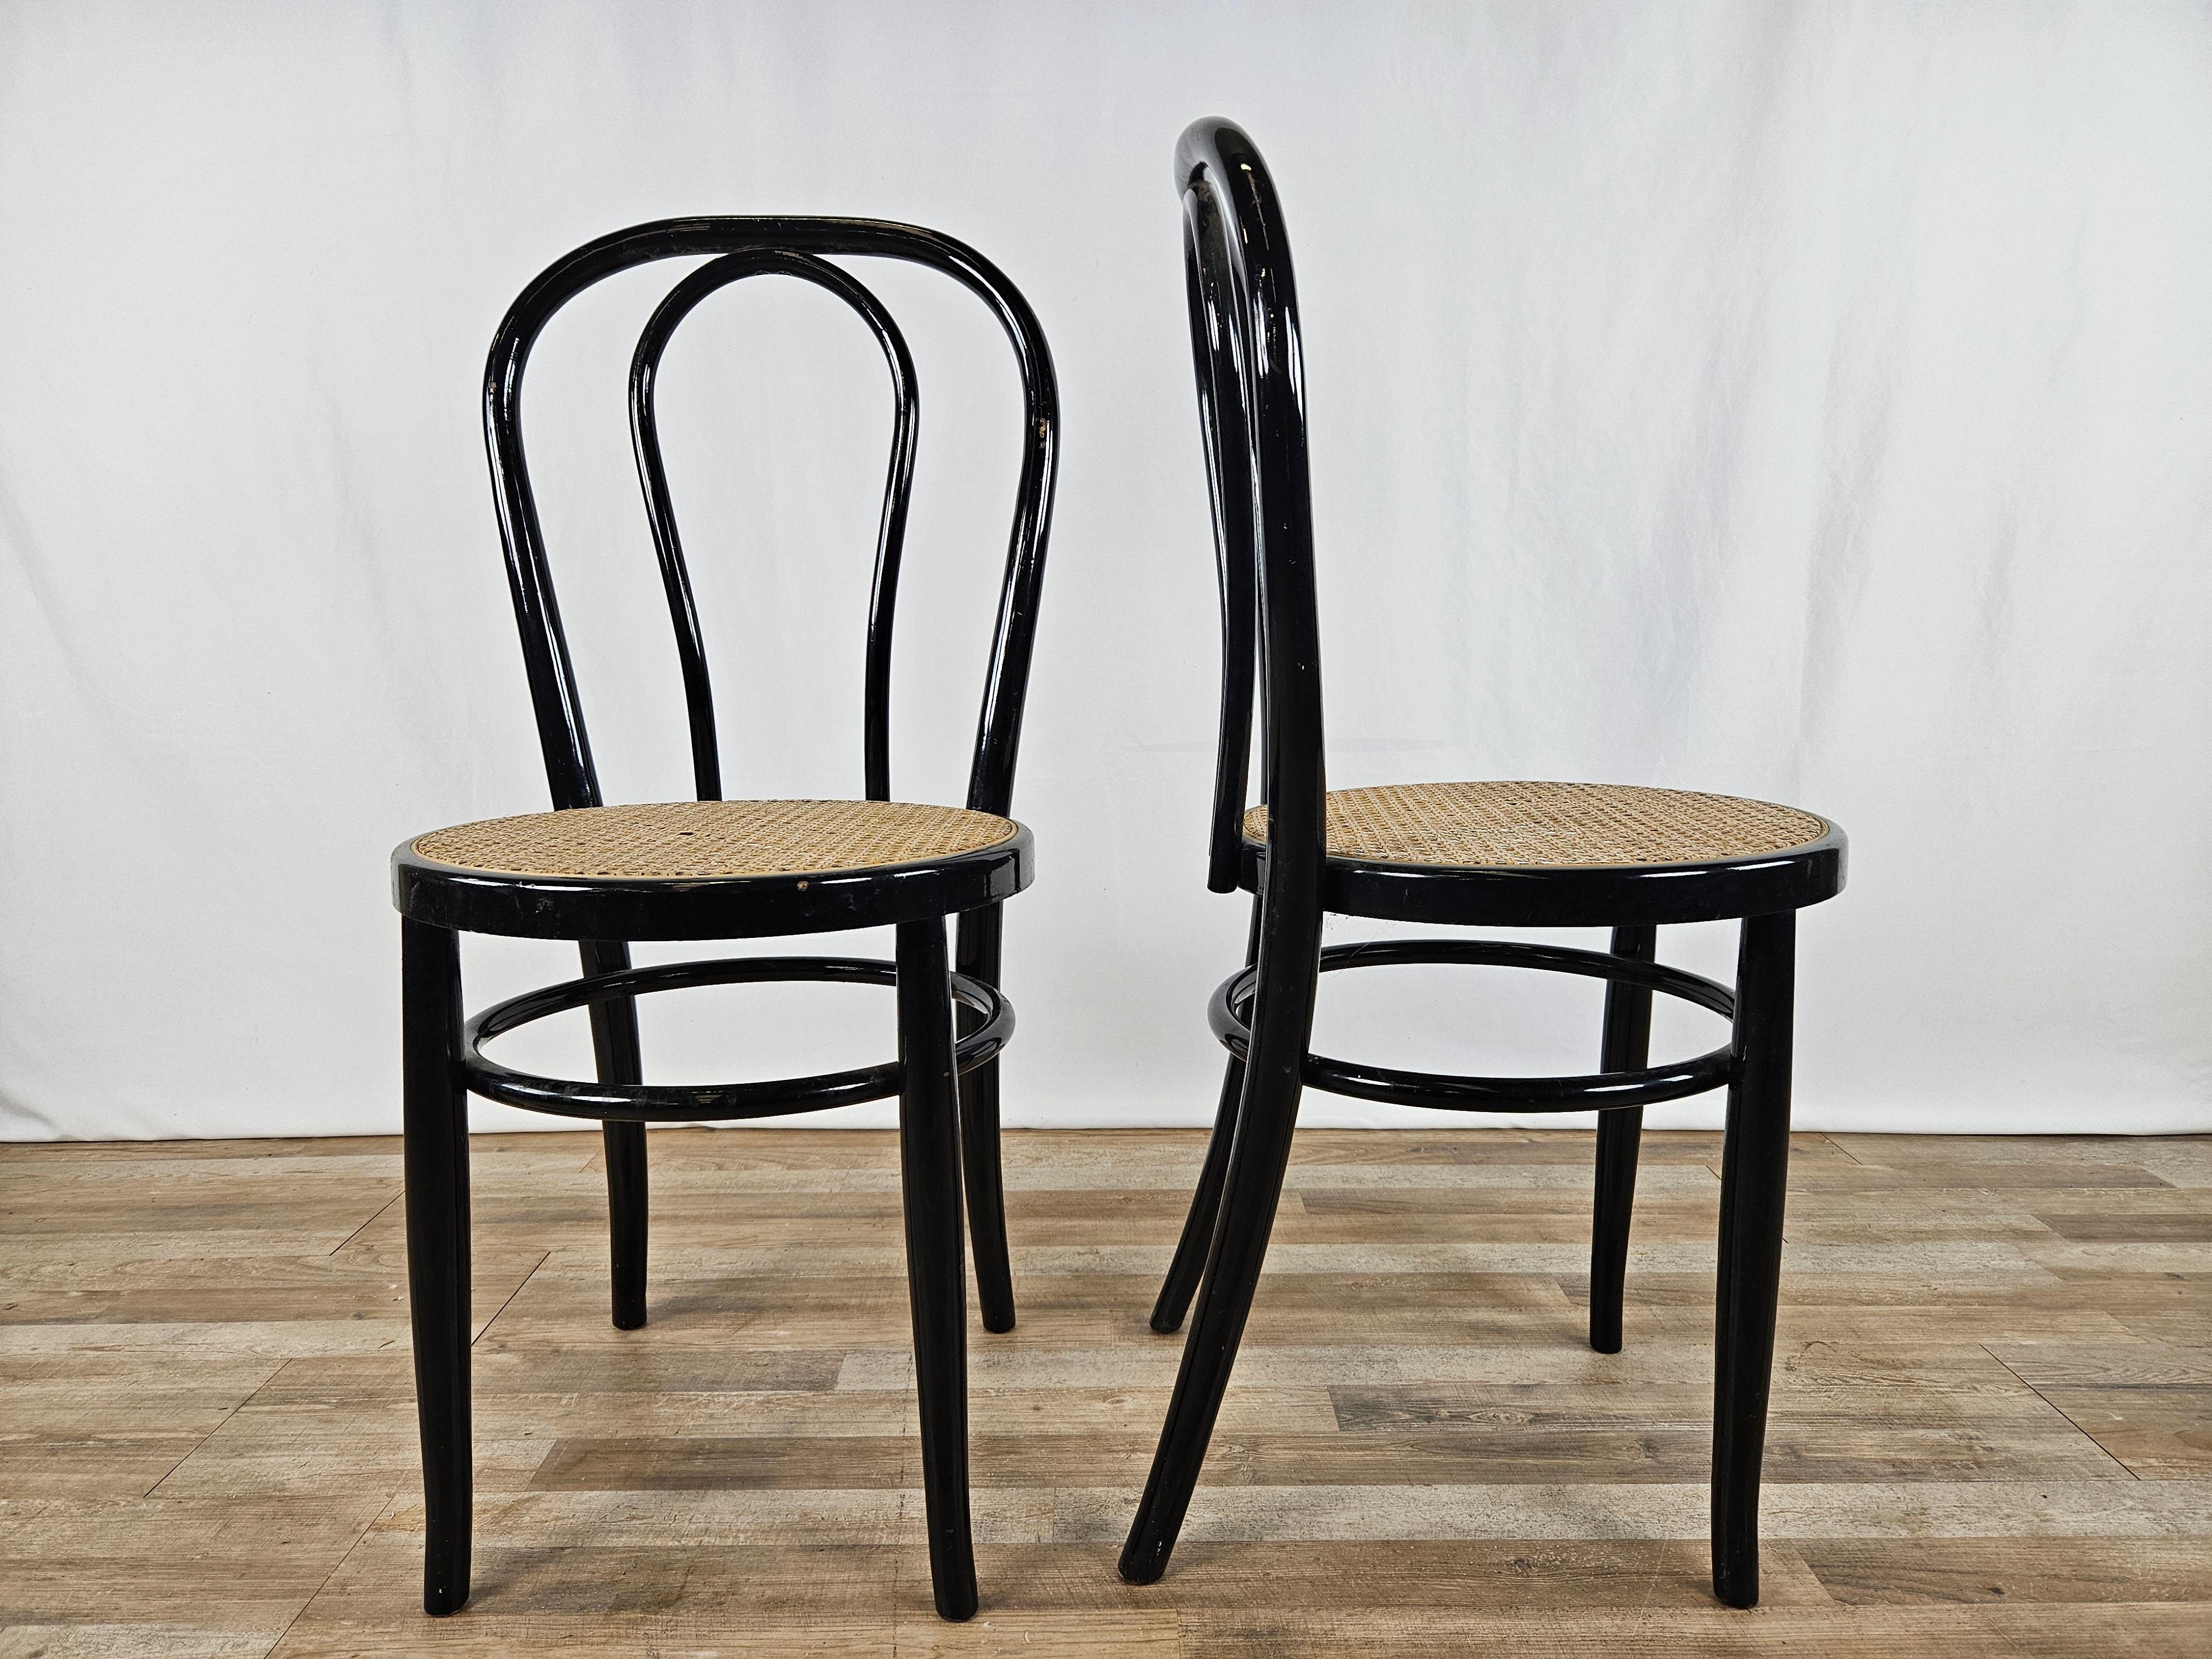 Paire de chaises en bois laqué noir avec assise en paille de Vienne.

Idéal pour les cuisines, les bureaux, les salons ou comme éléments de mobilier.

Signes normaux dus à l'âge et à l'utilisation.